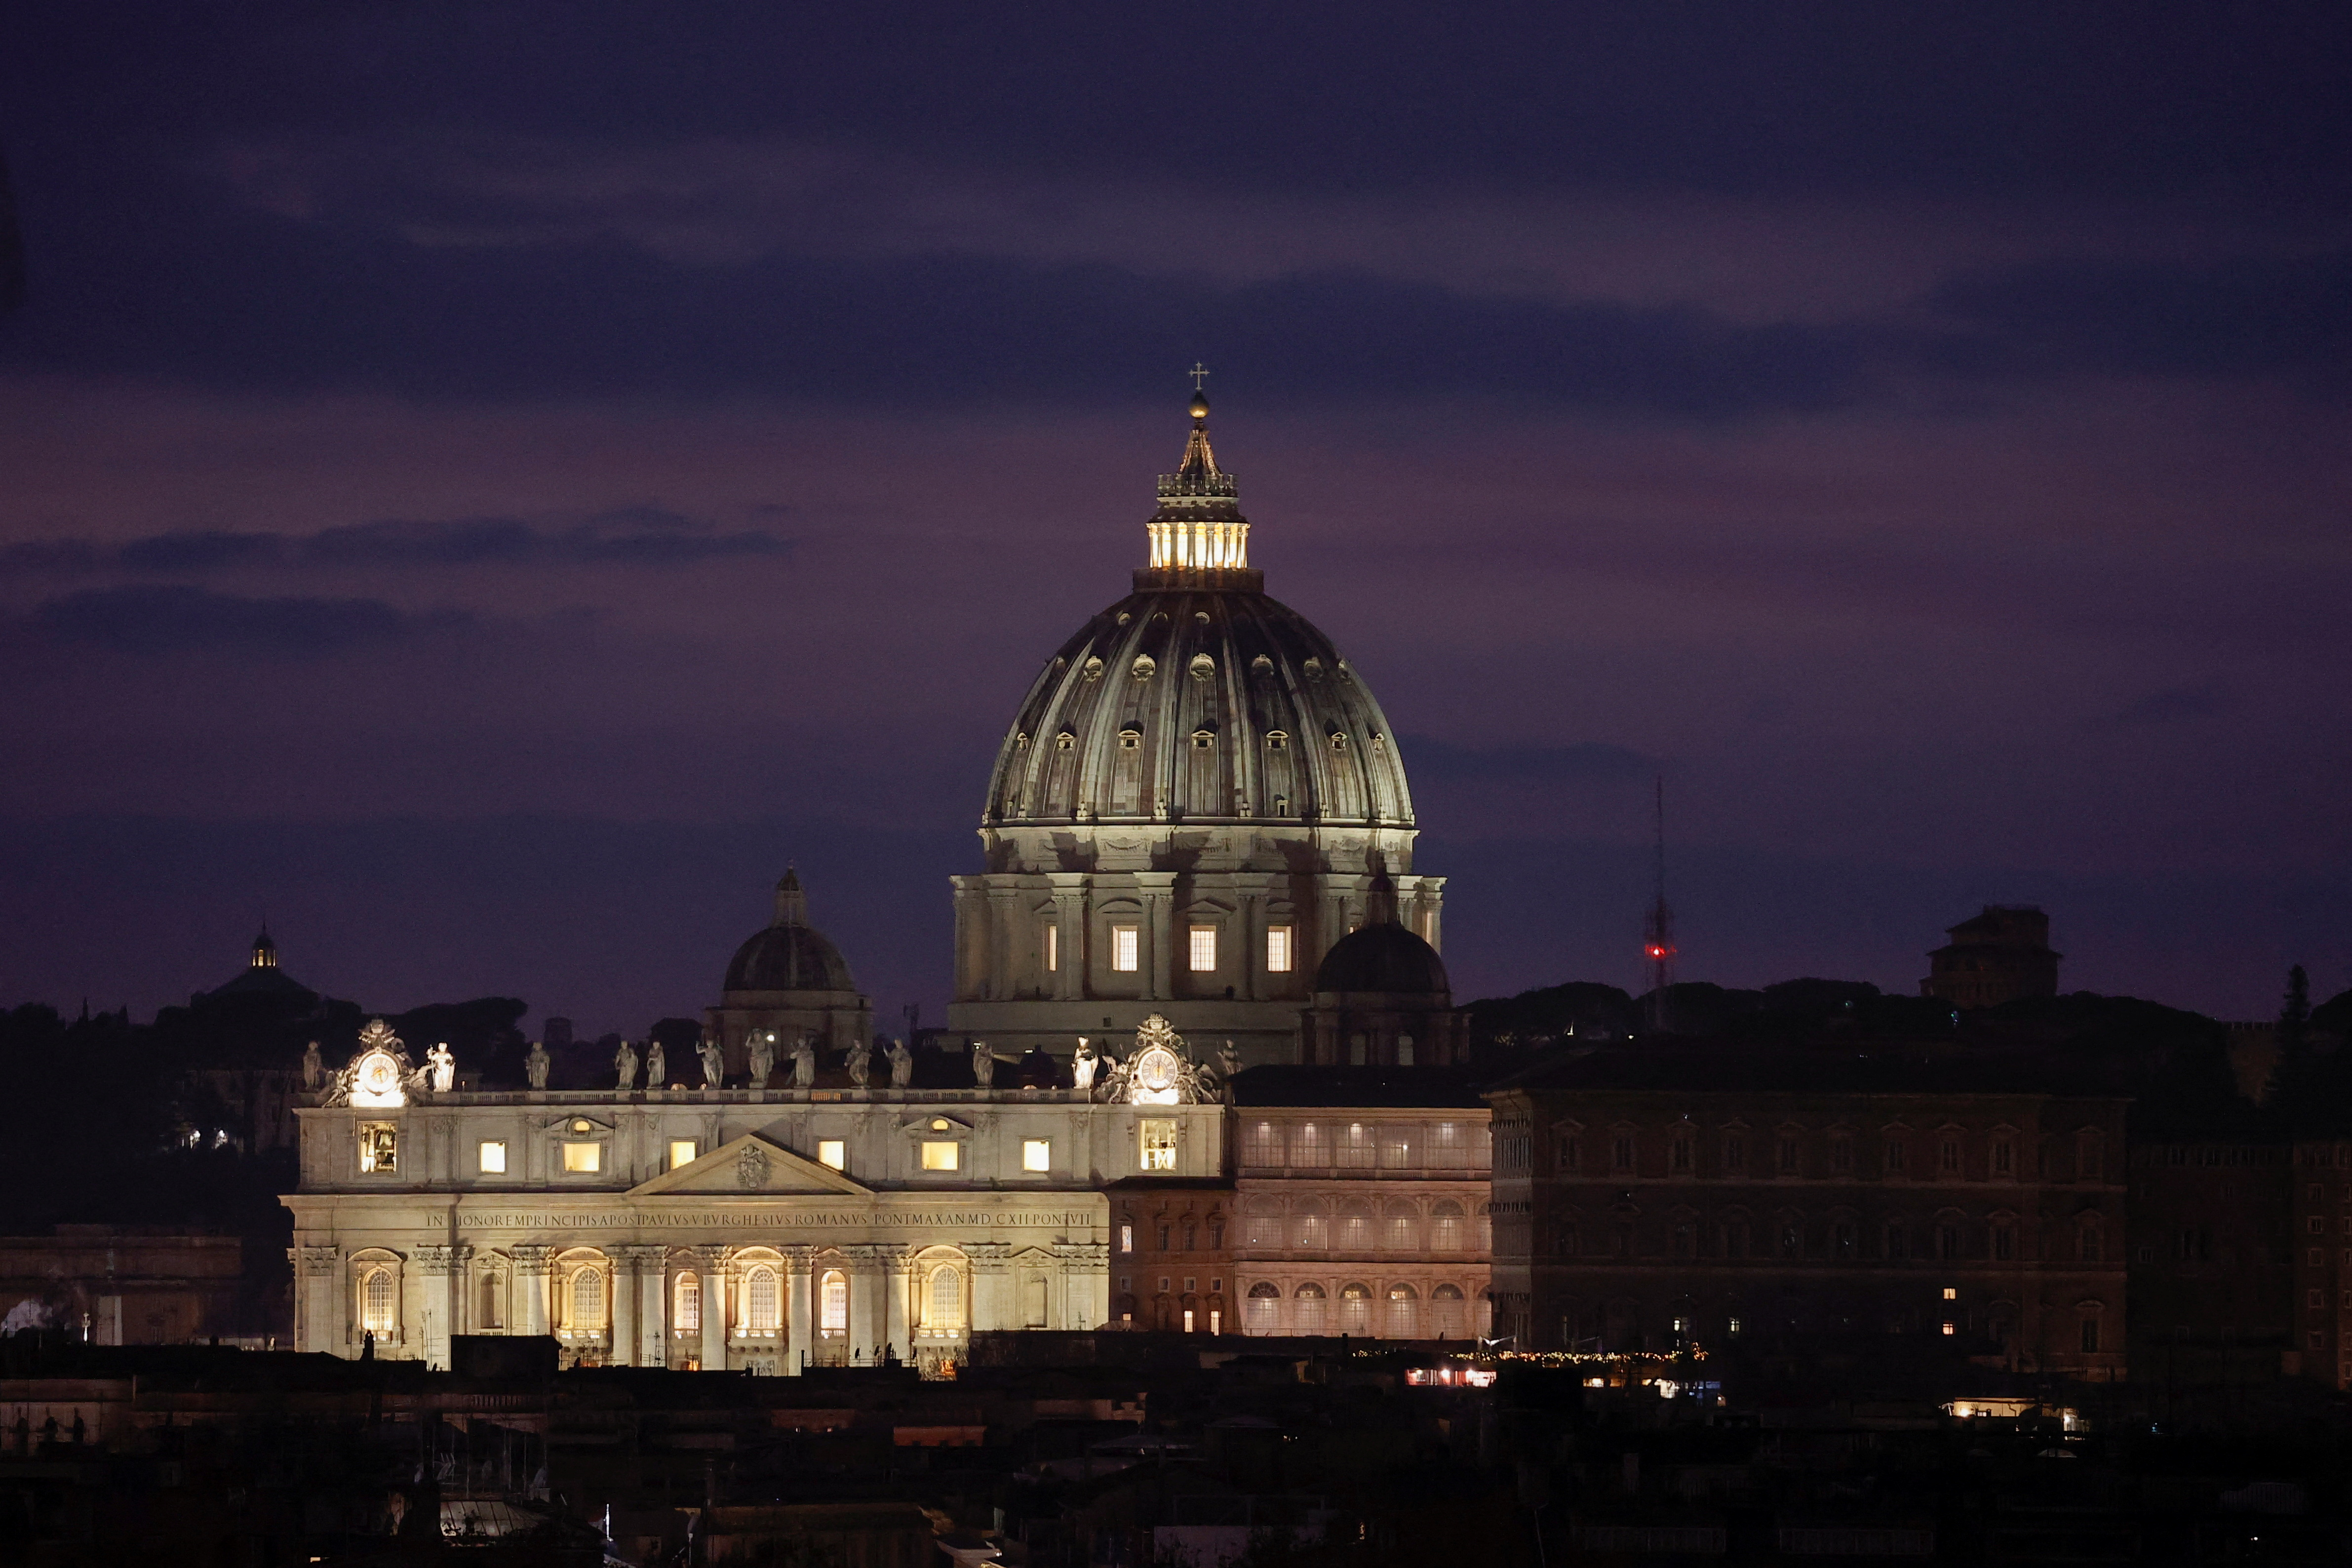 La complicada situación en el Vaticano que llegó a su fin con la muerte de Benedicto XVI